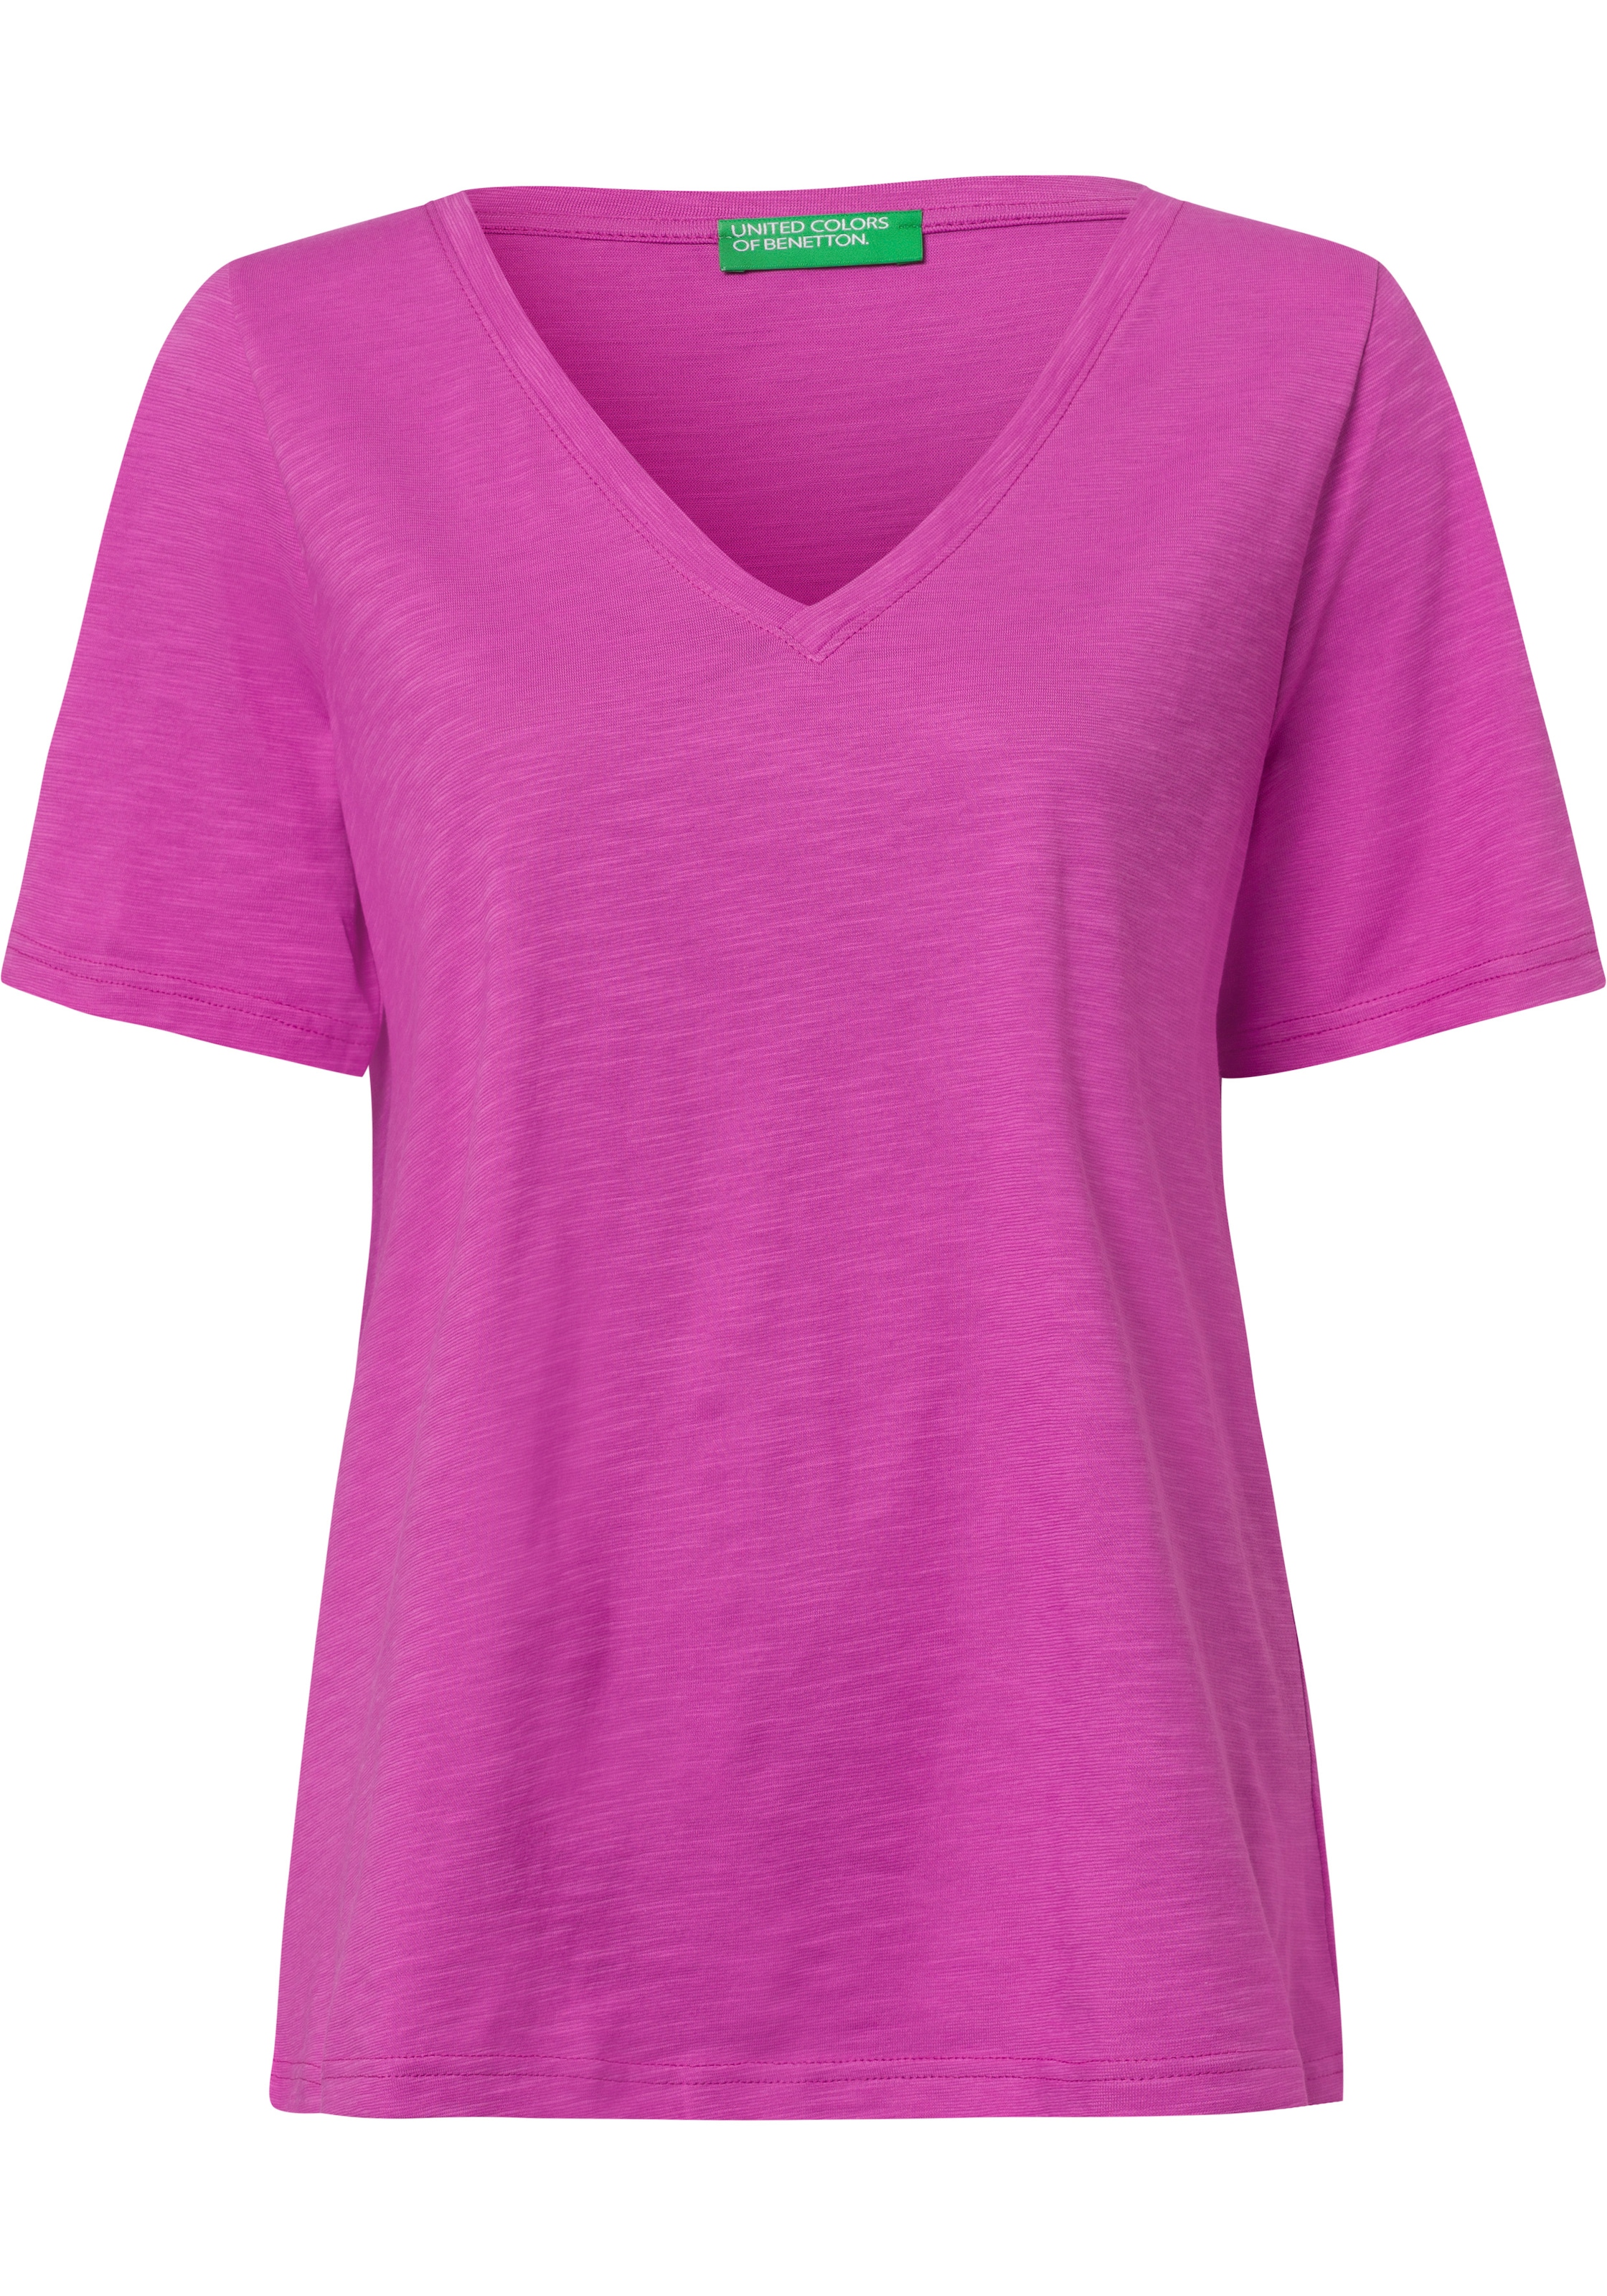 Neue Ware eingetroffen United Colors bei T-Shirt, aus OTTO Benetton of Flammgarnjersey kaufen